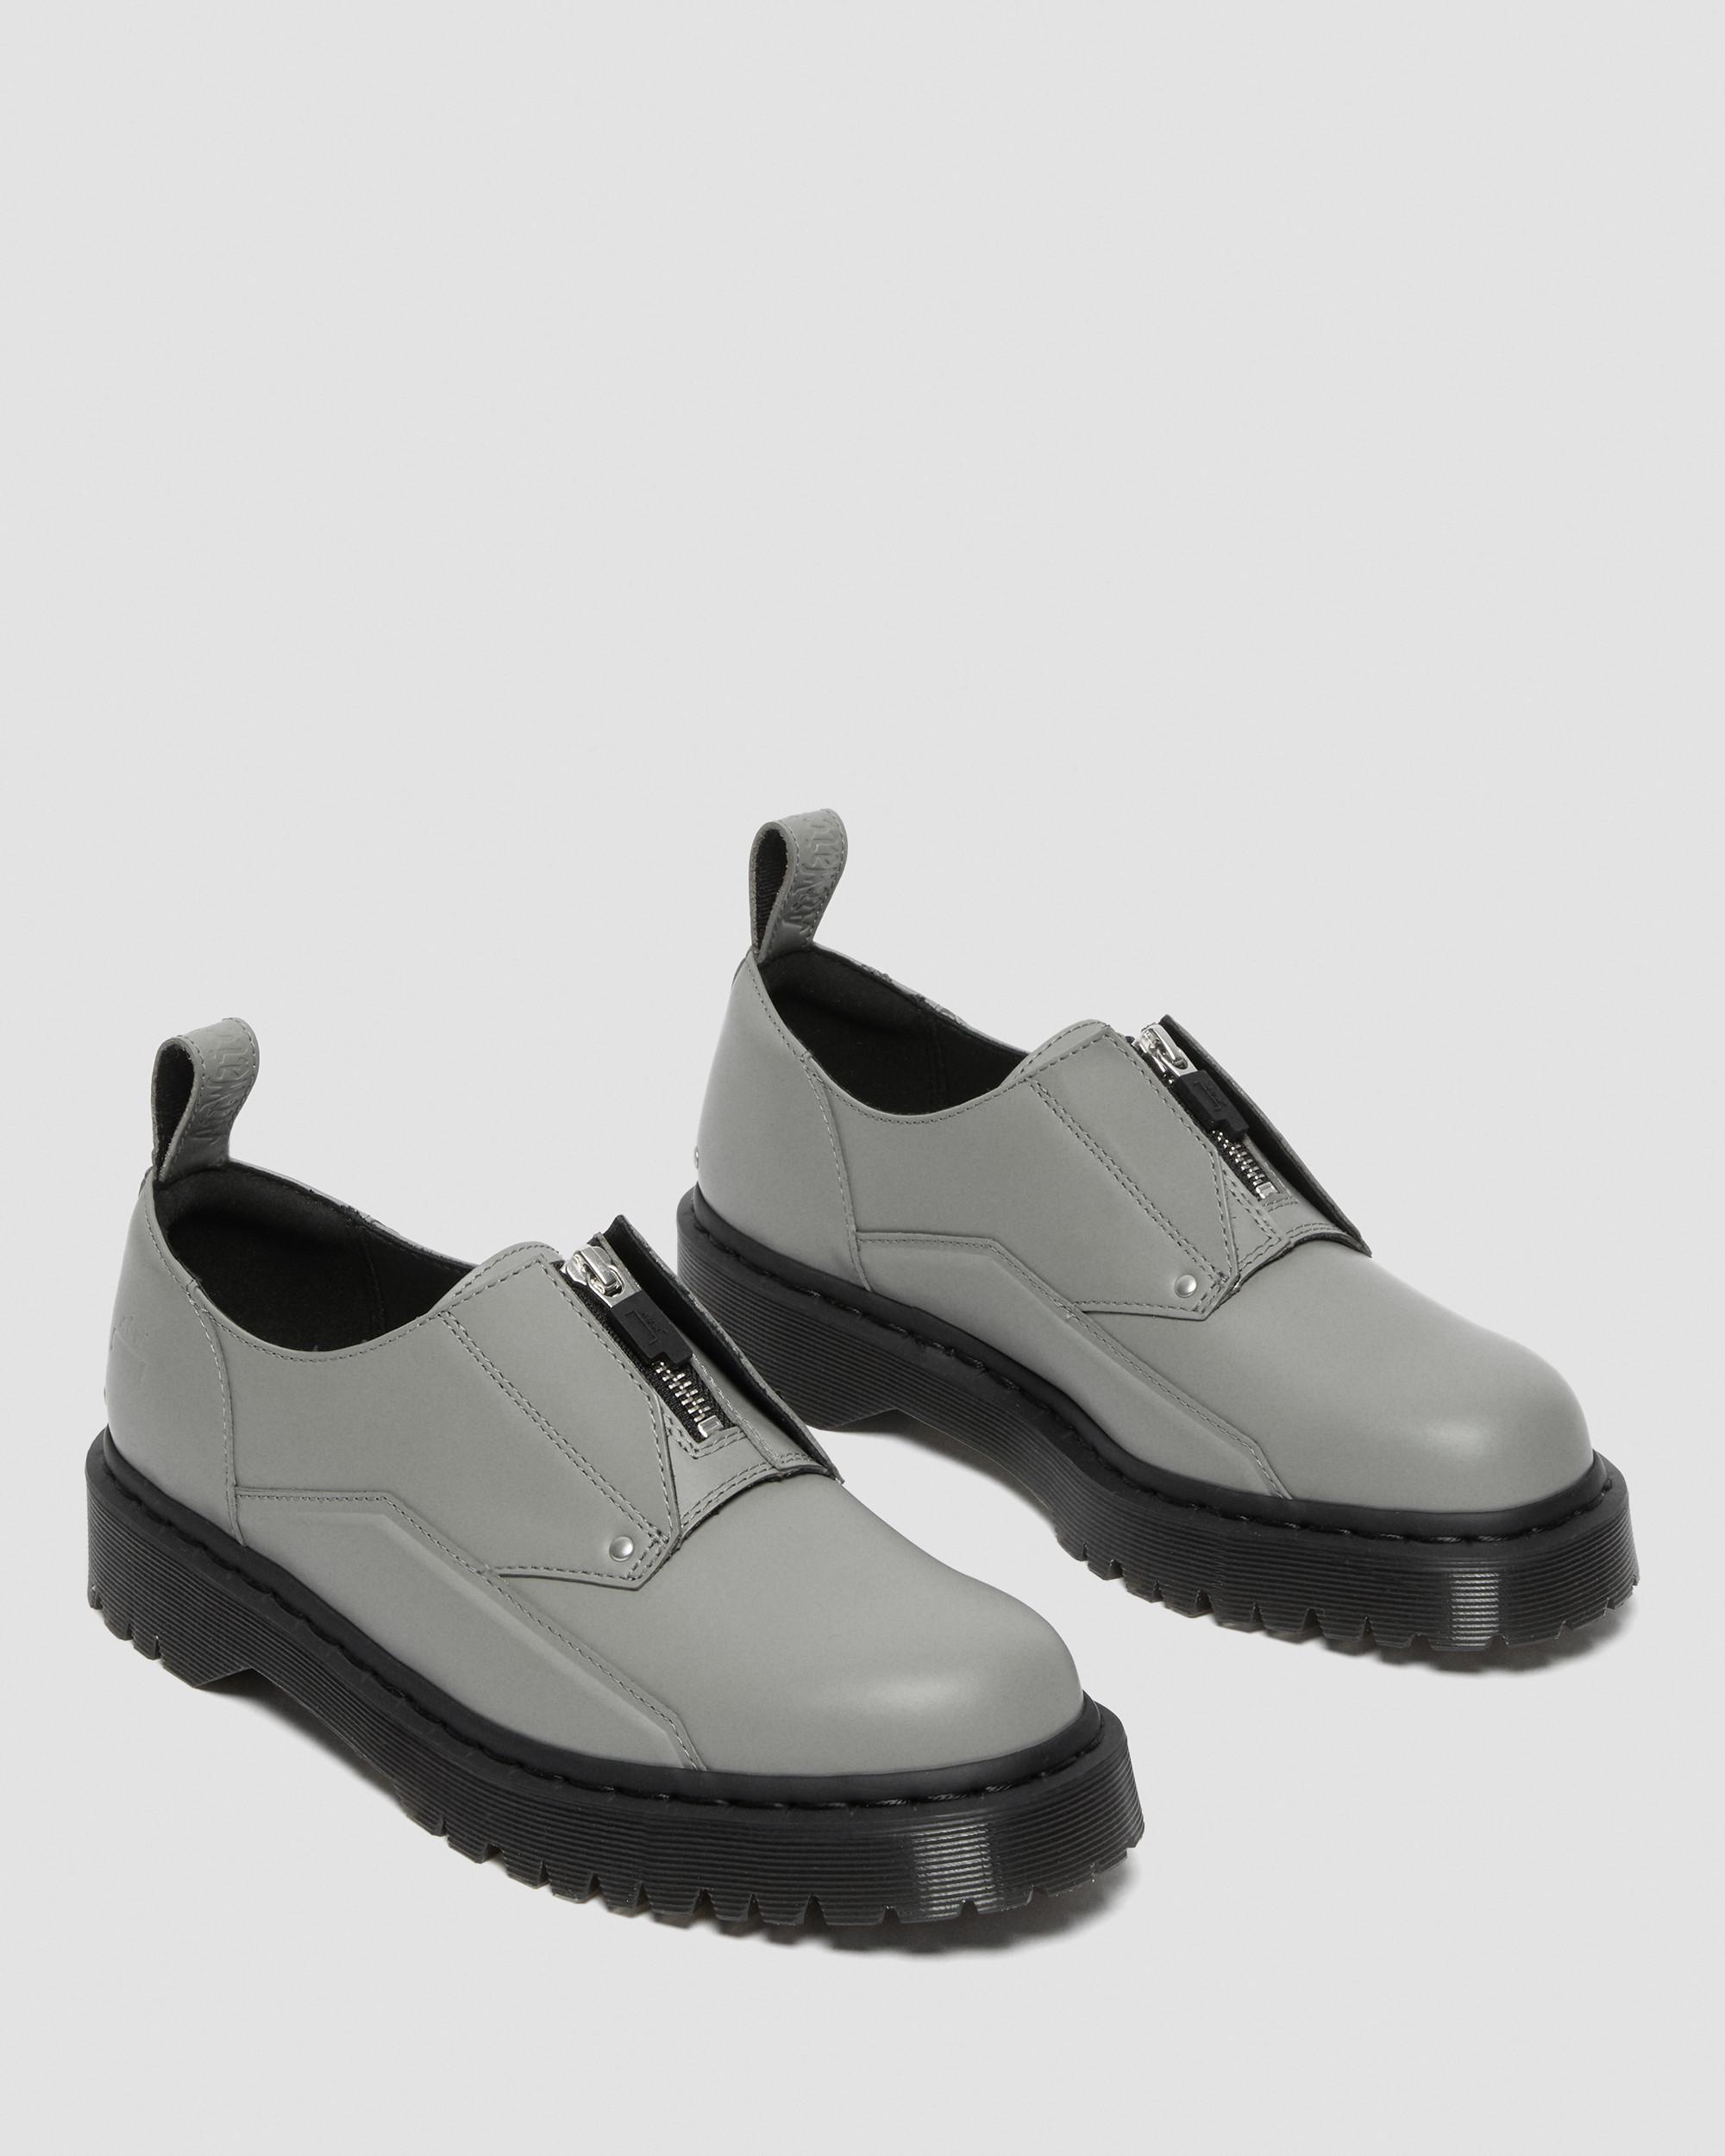 1461 Bex ACW* Leather Shoes | Dr. Martens